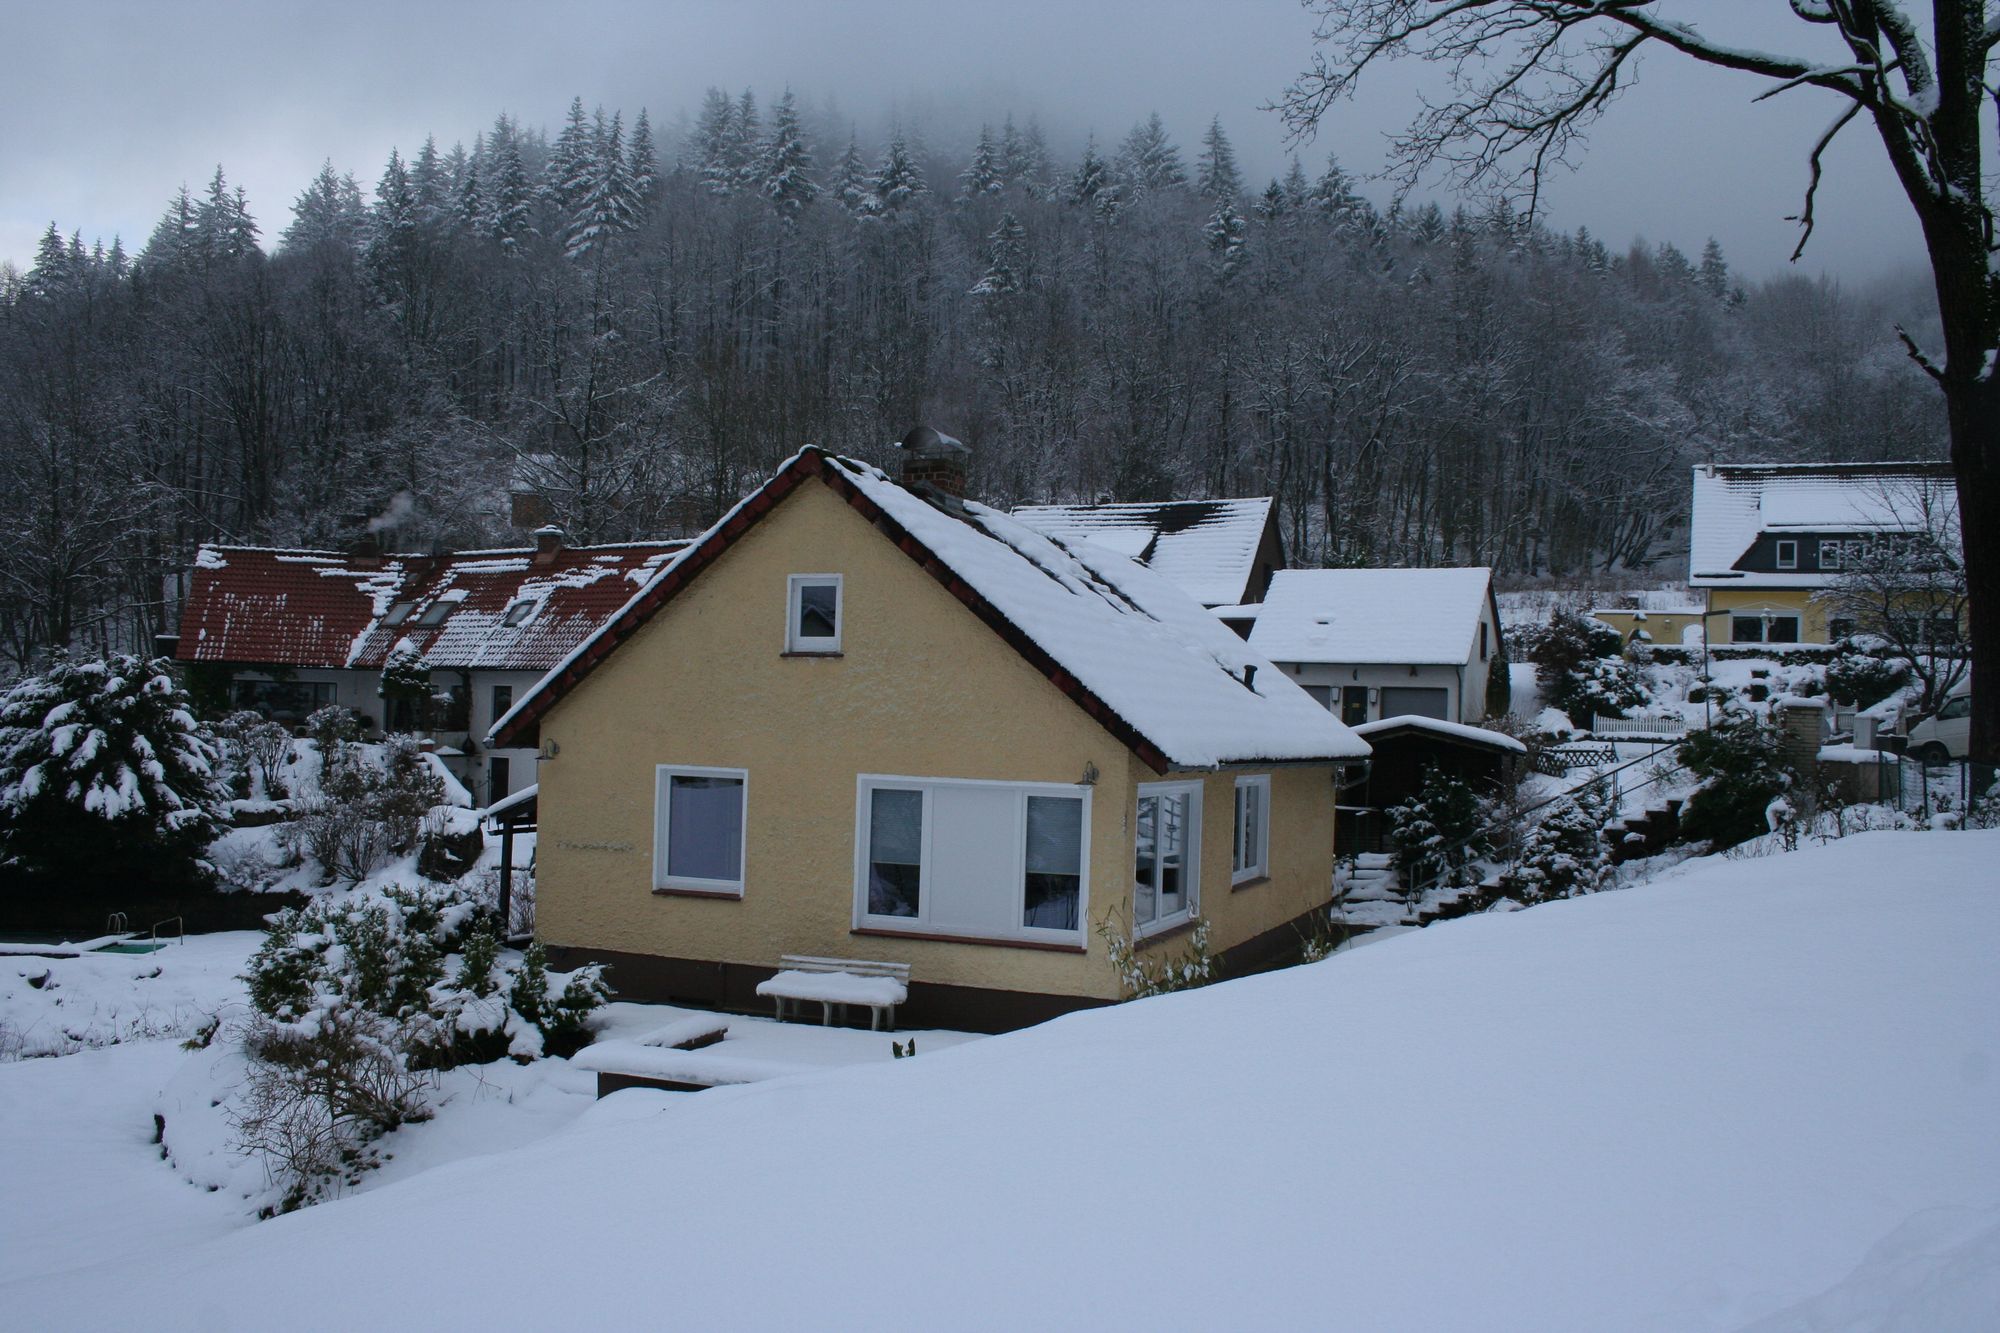 Das idyllische Bad Lauterberg im Winter...und Sie vielleicht mittendrin?!<br>(Bild: Fam. Eckardt)